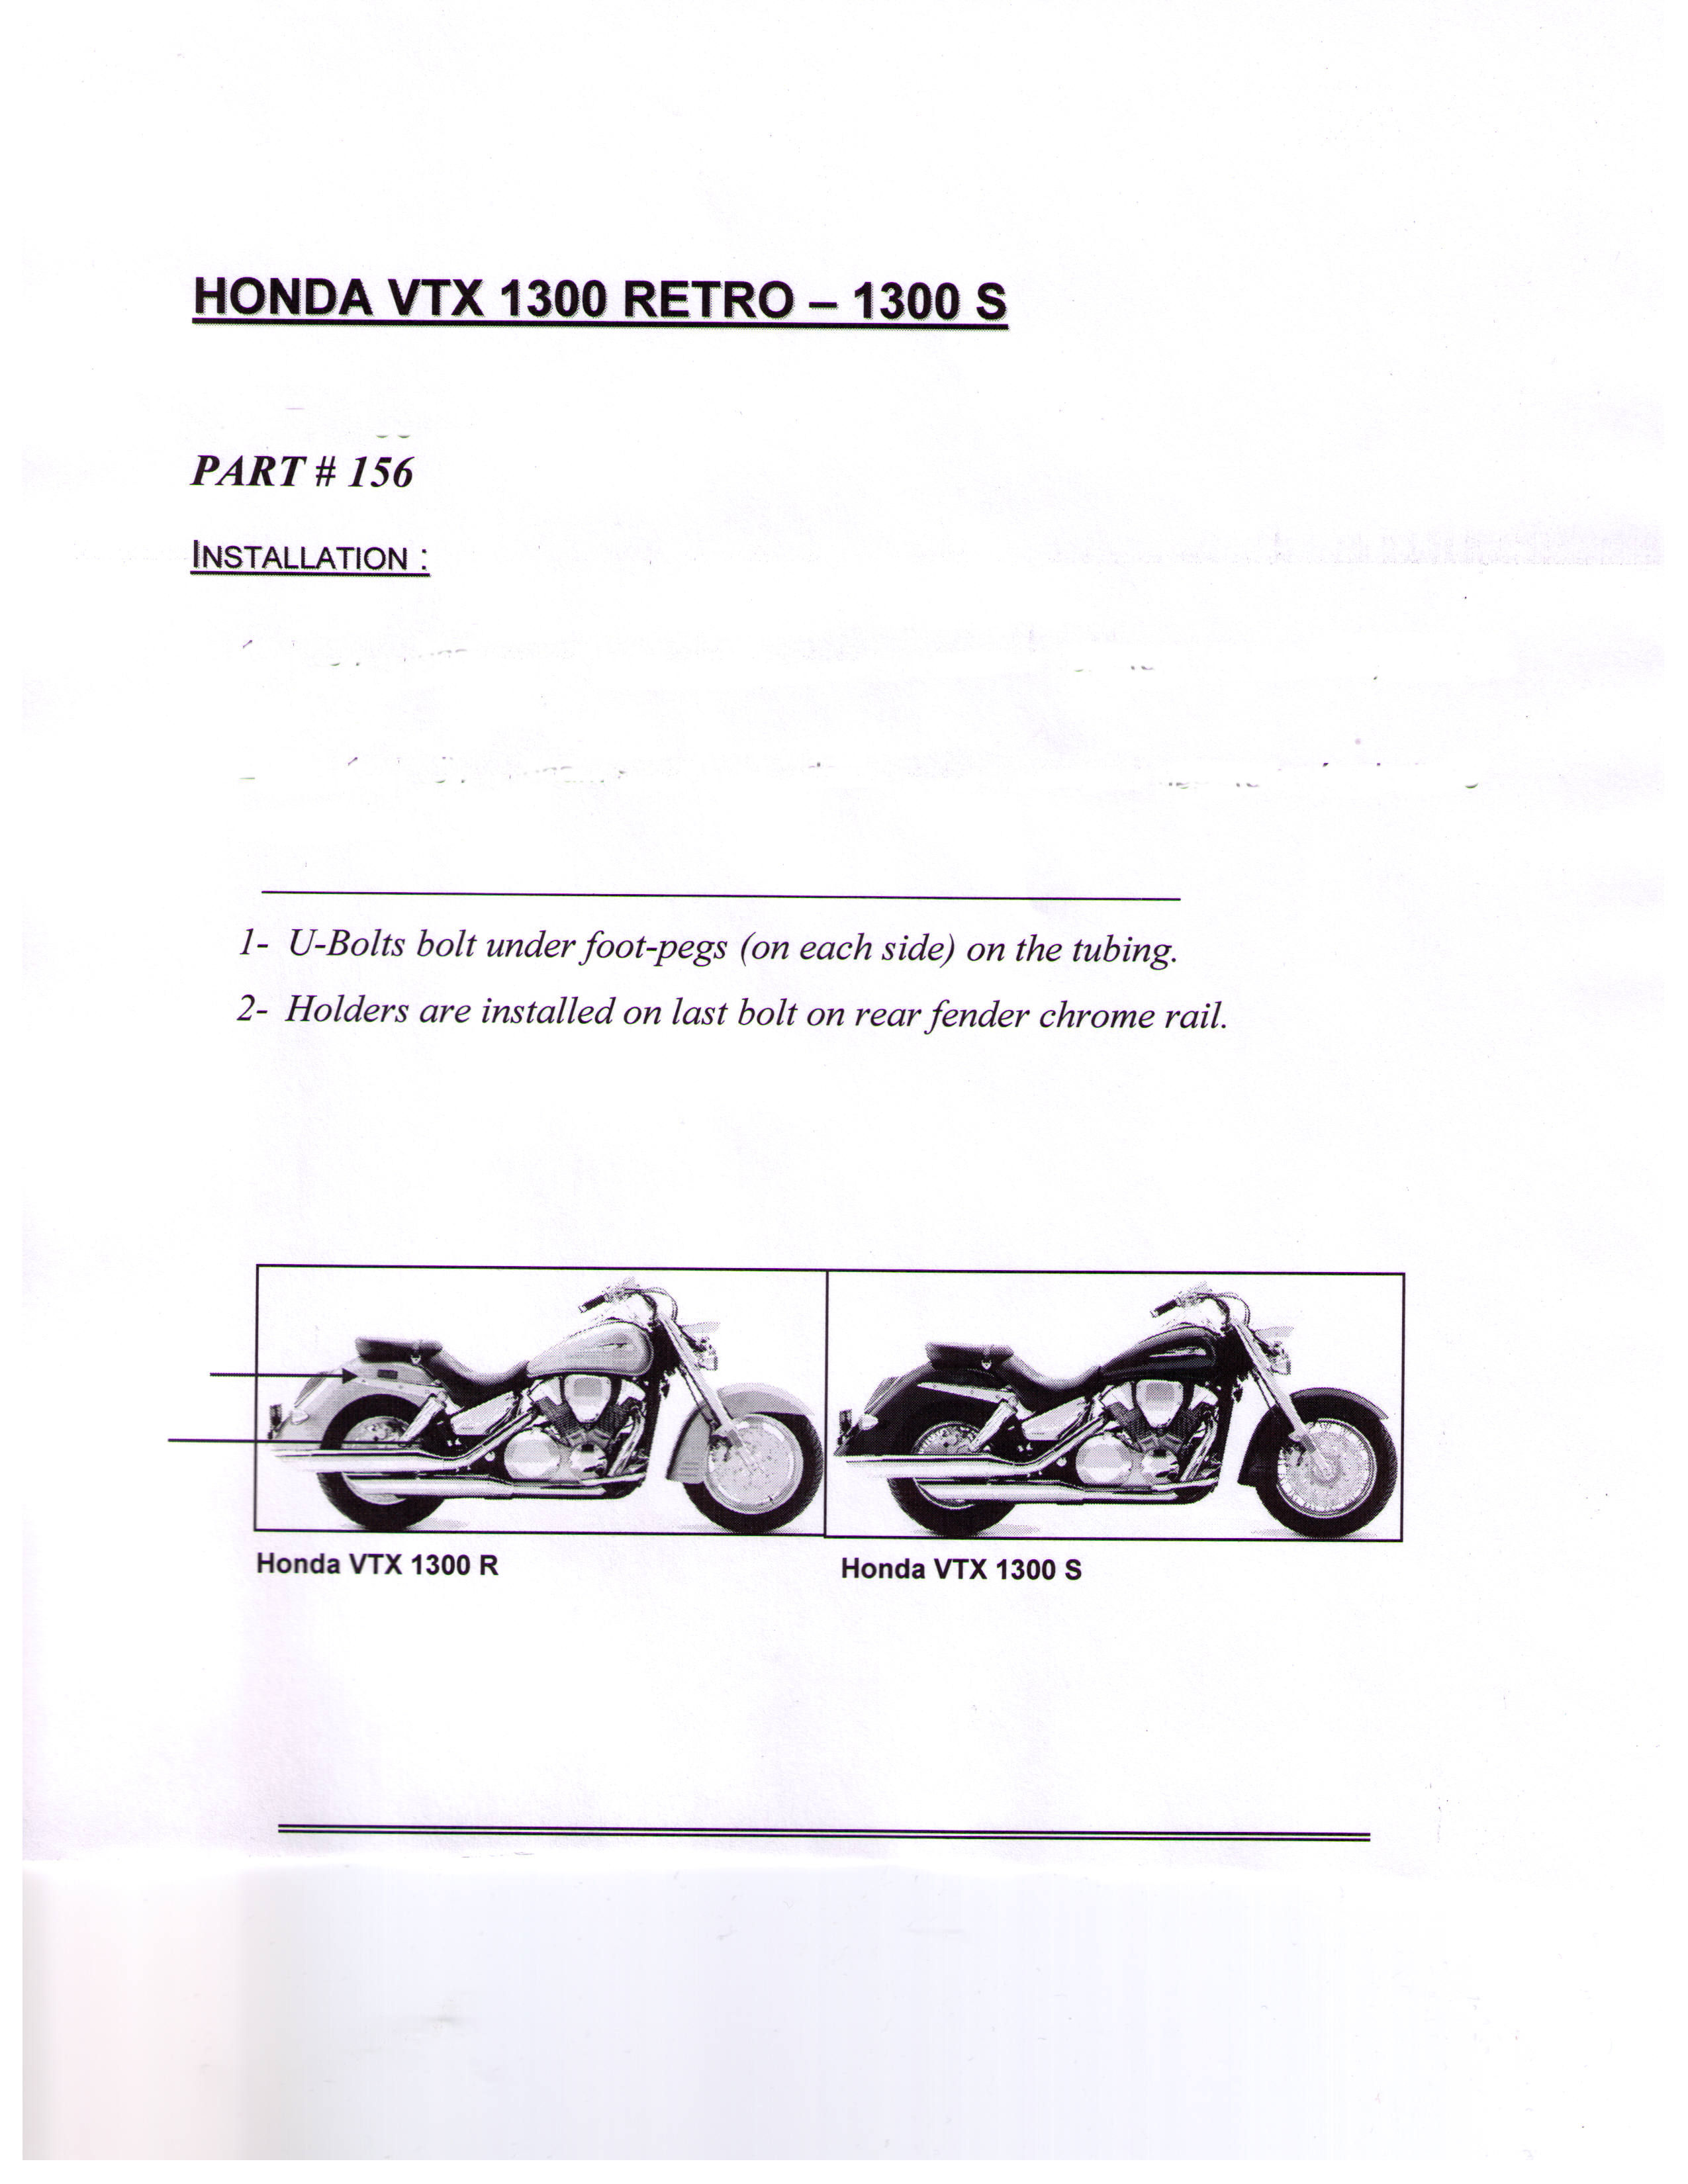 Installation Instructions Honda VTX 1300 Retro